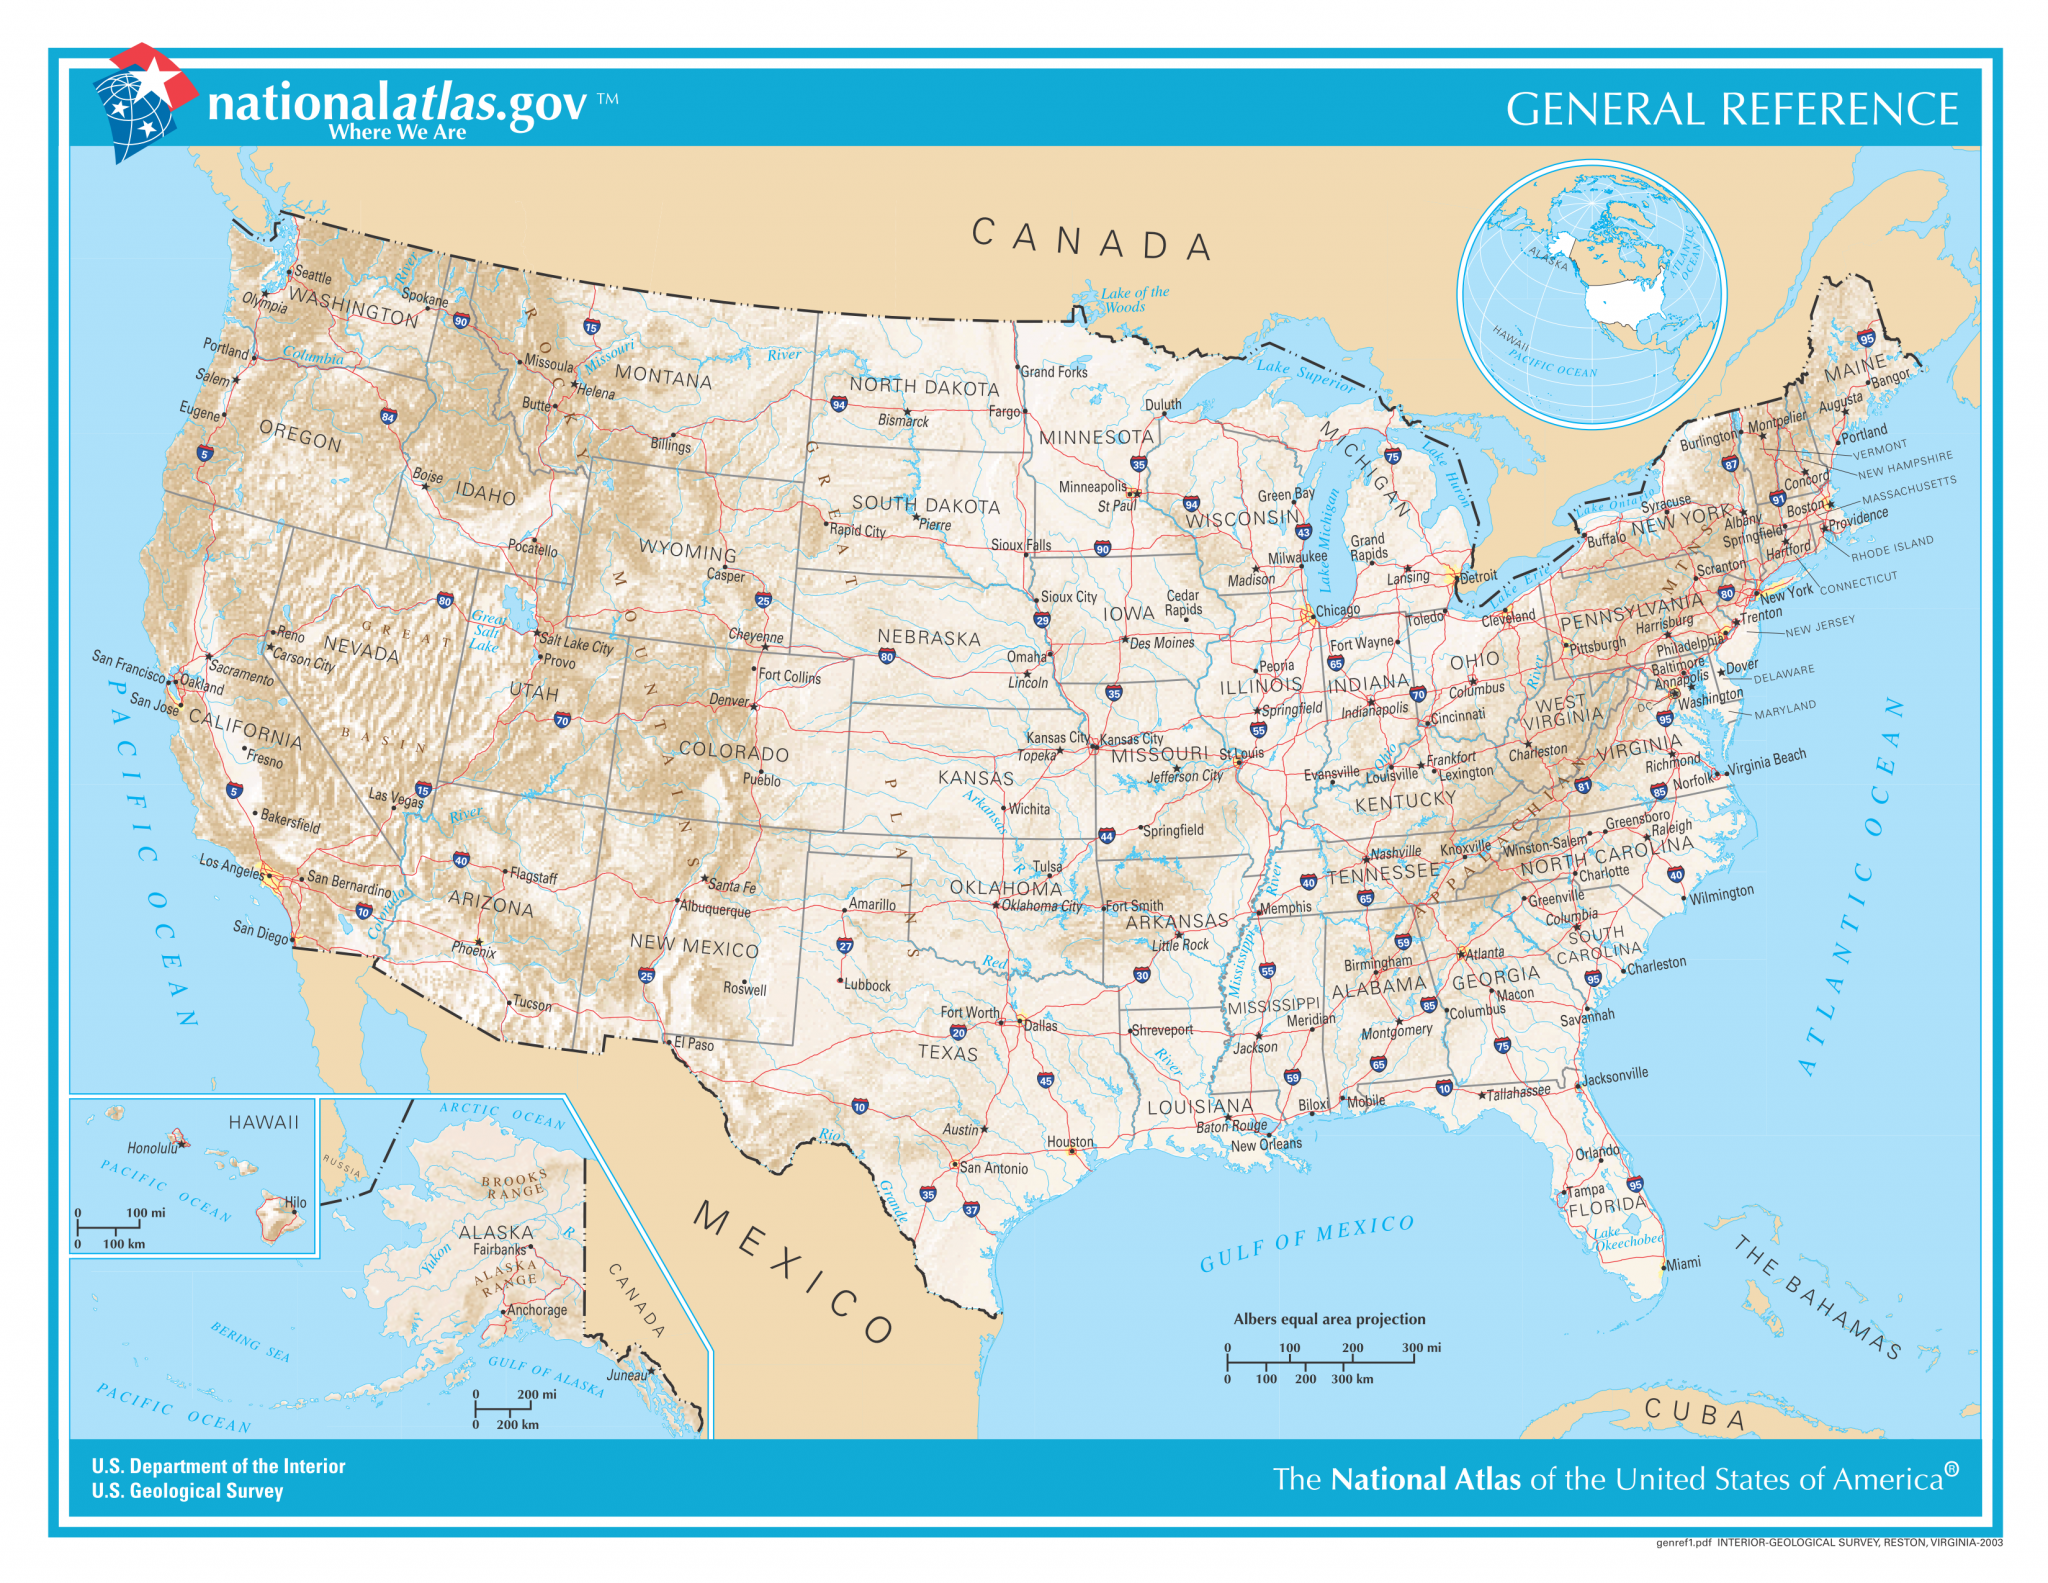 USA Karte: Alle 50 Bundesstaaten auf einen Blick